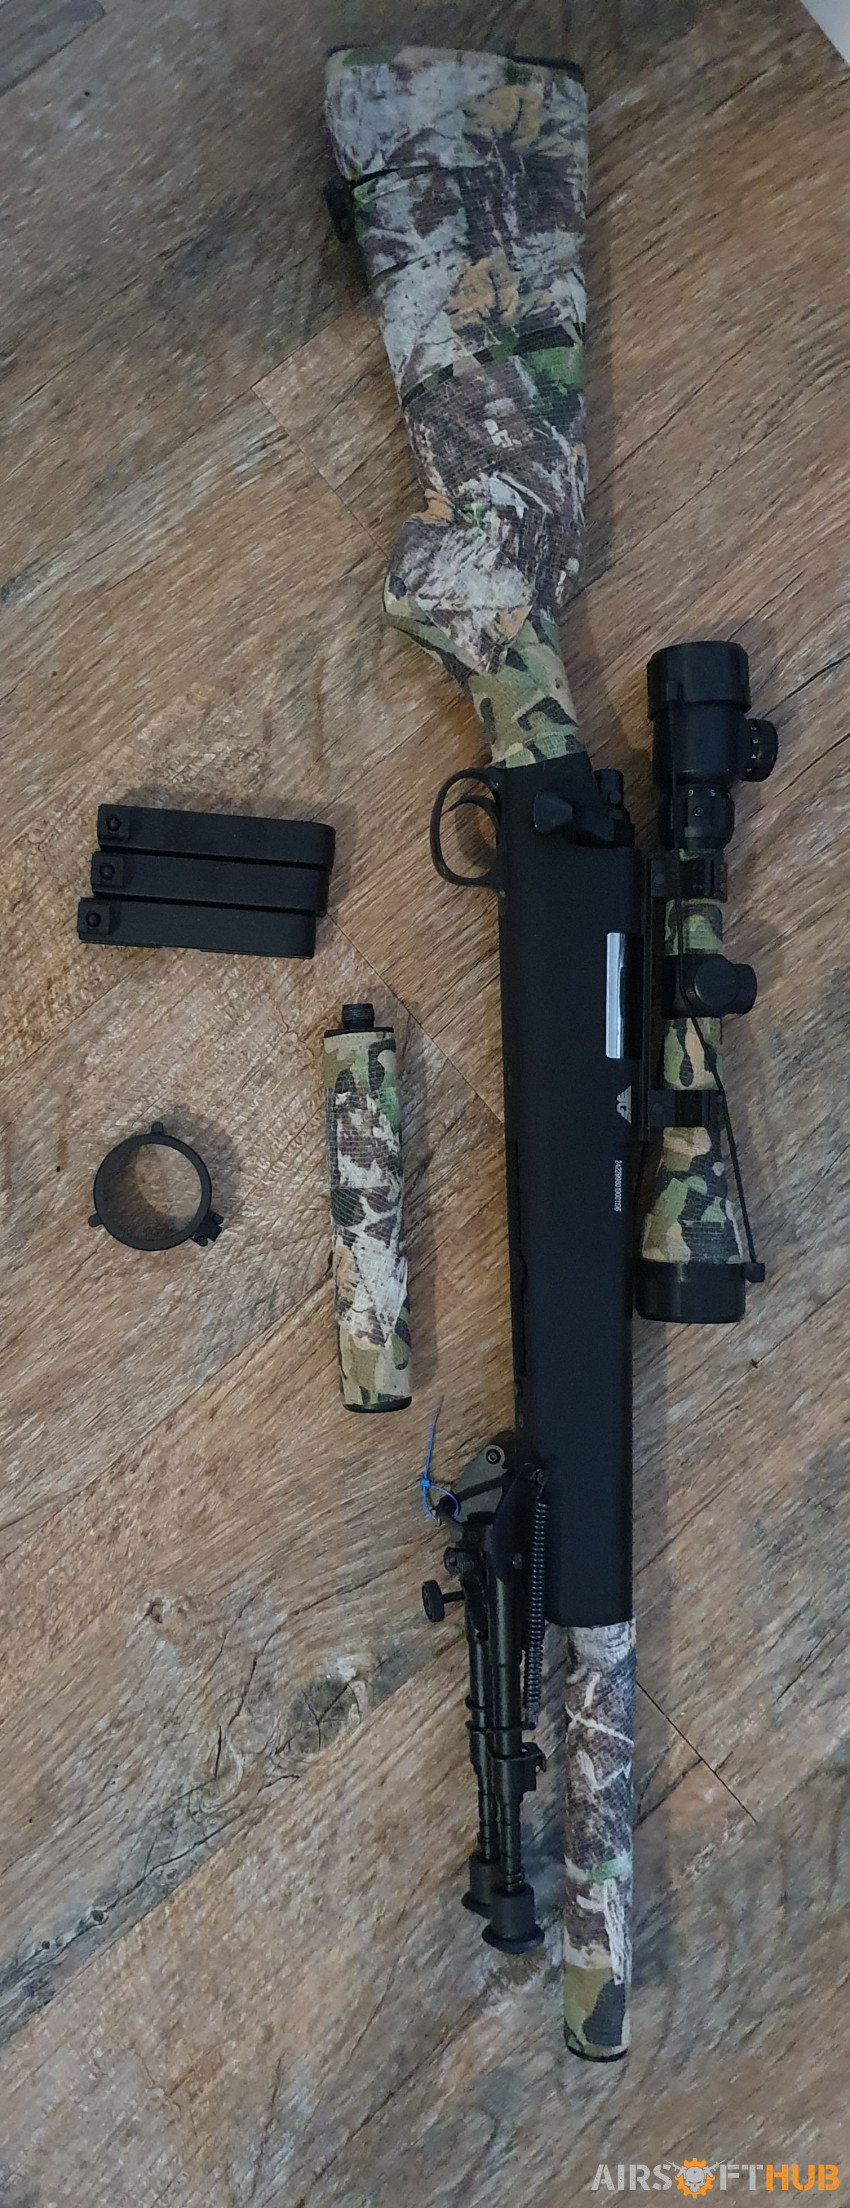 JG VSR BAR10 G-spec Sniper - Used airsoft equipment